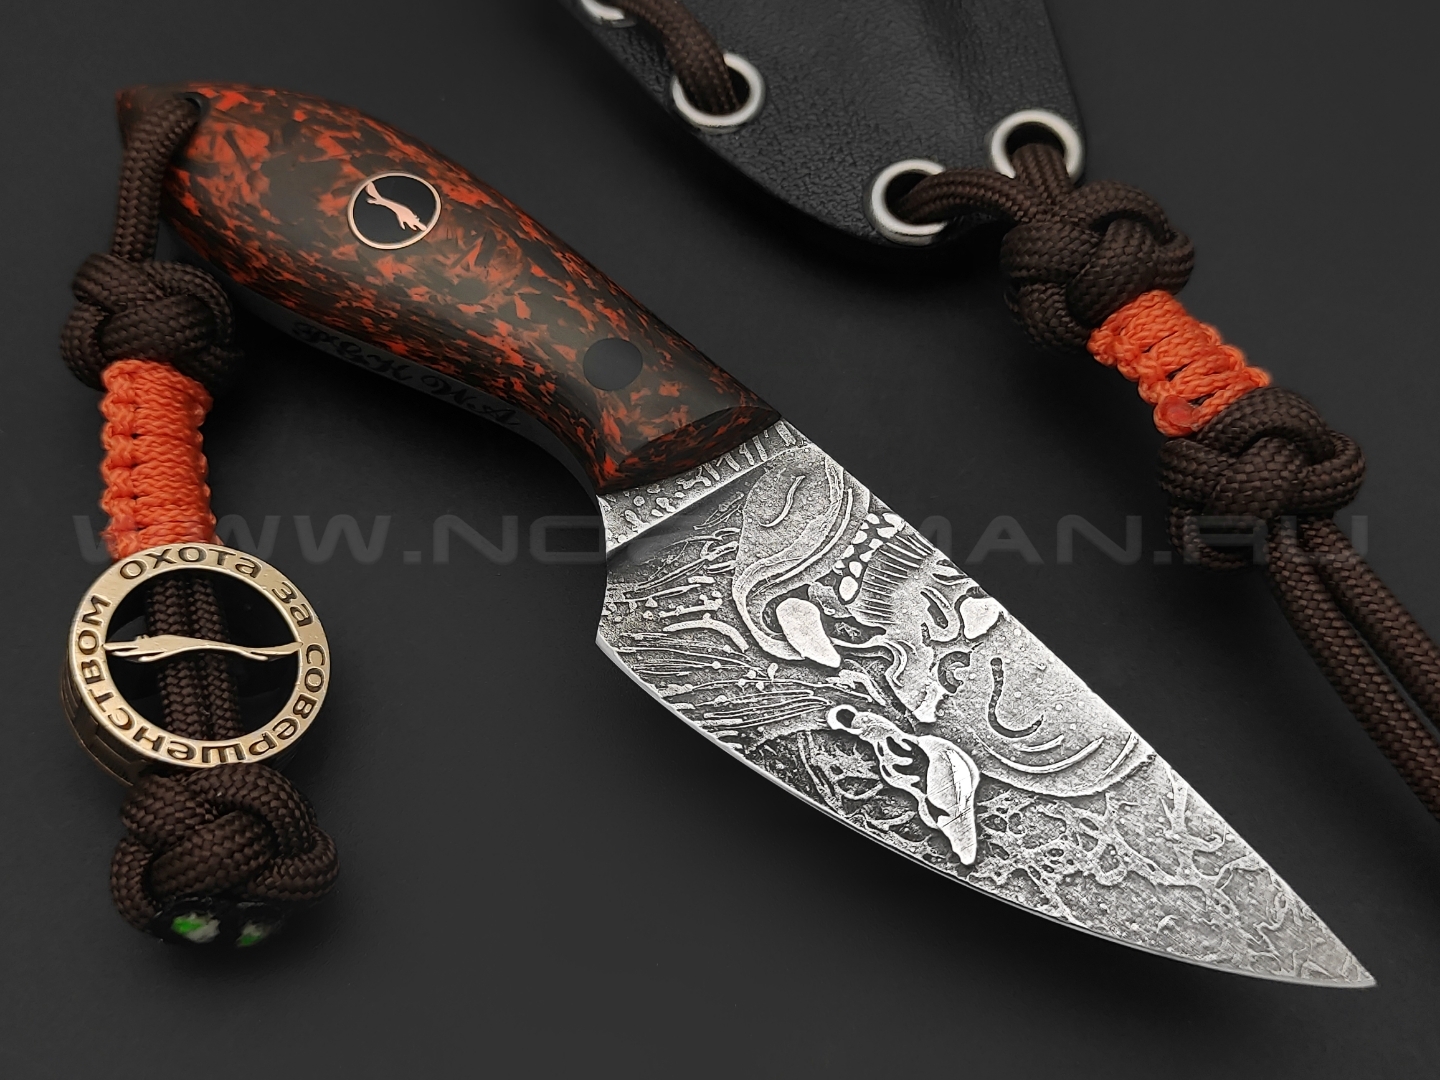 Волчий Век нож МасичЬка Custom Orc Edition сталь PGK WA травление, рукоять Carbon fiber chaotic orange